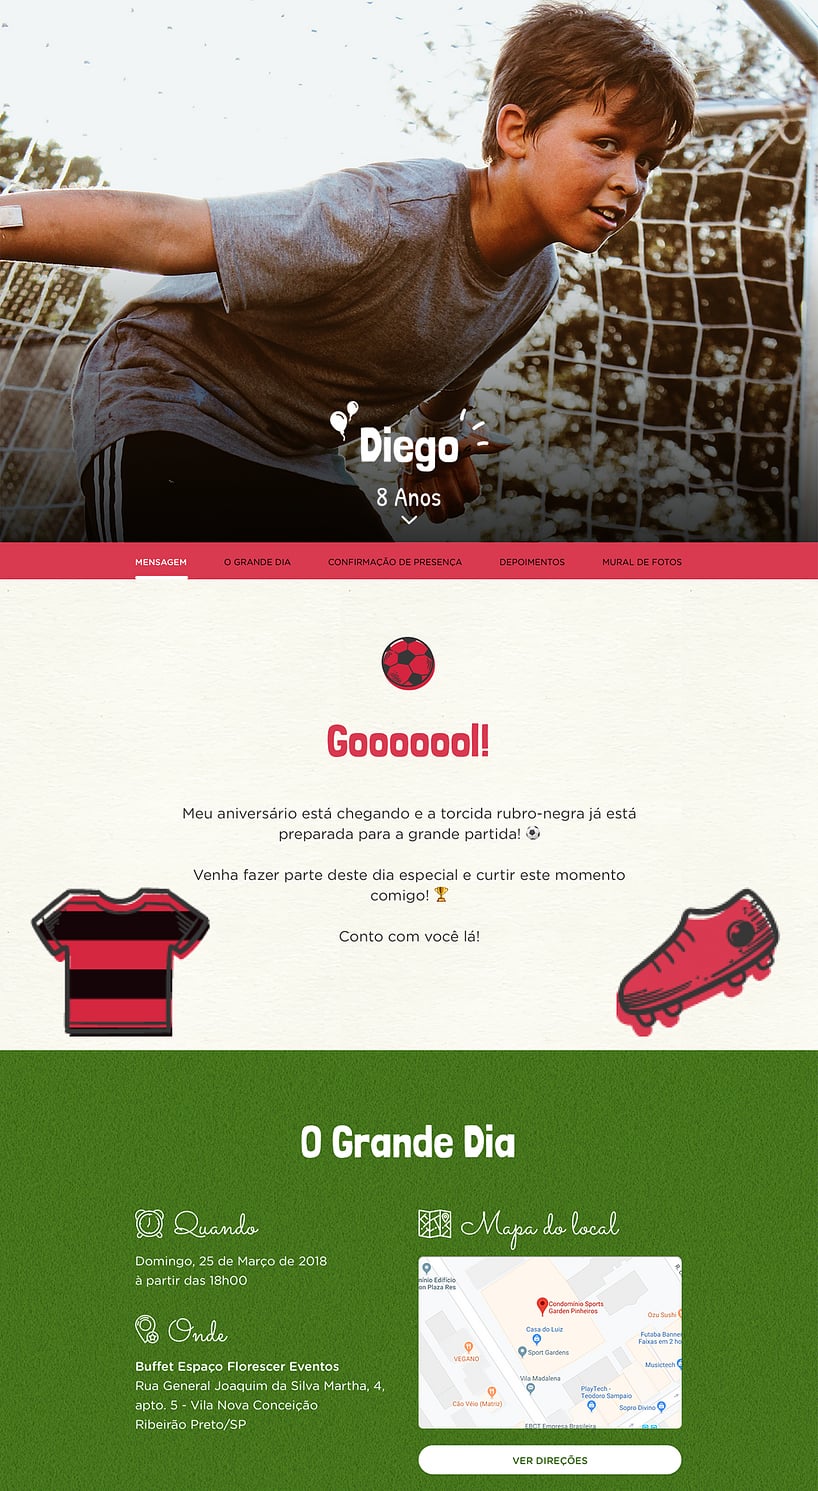 Convite Aniversario Flamengo - Edite grátis com nosso editor online